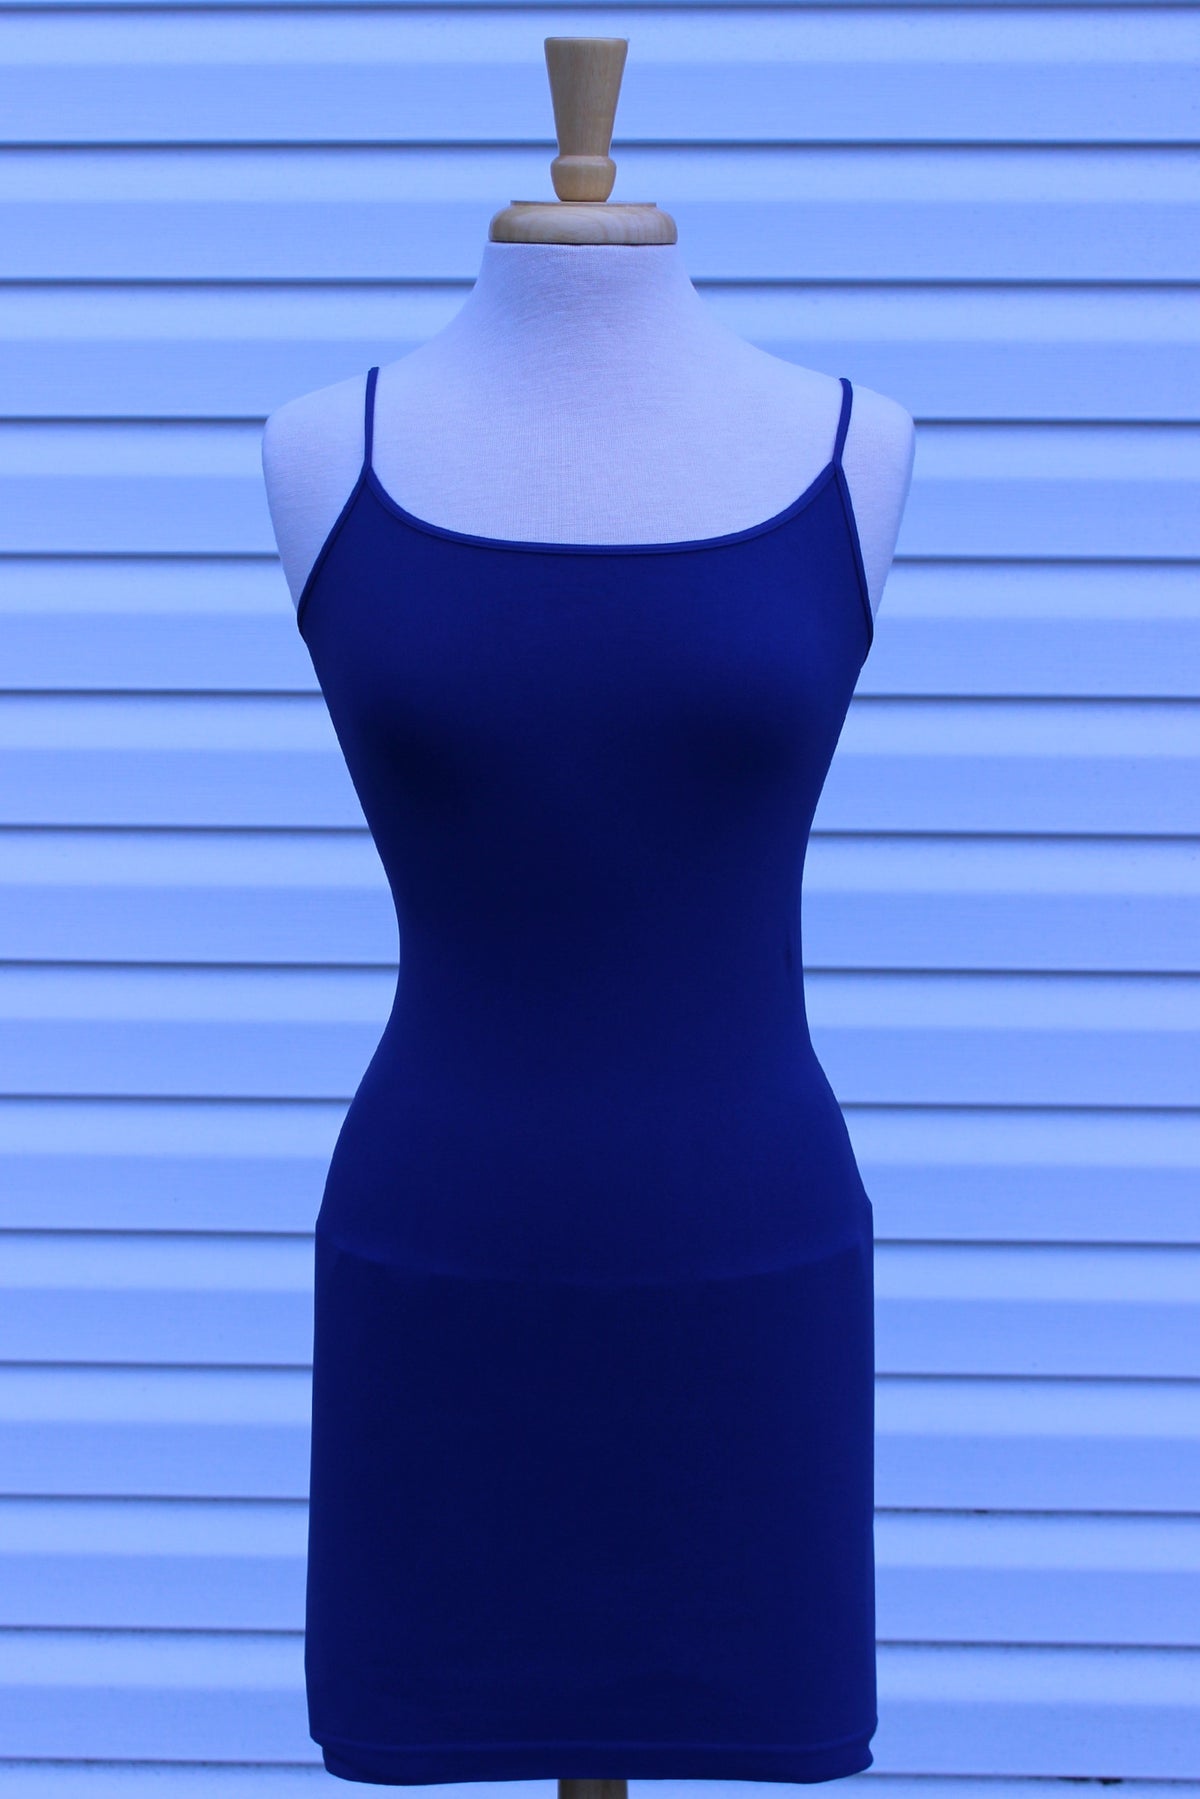 Tees by Tina: Cami Tunic Slip Dress, Cobalt